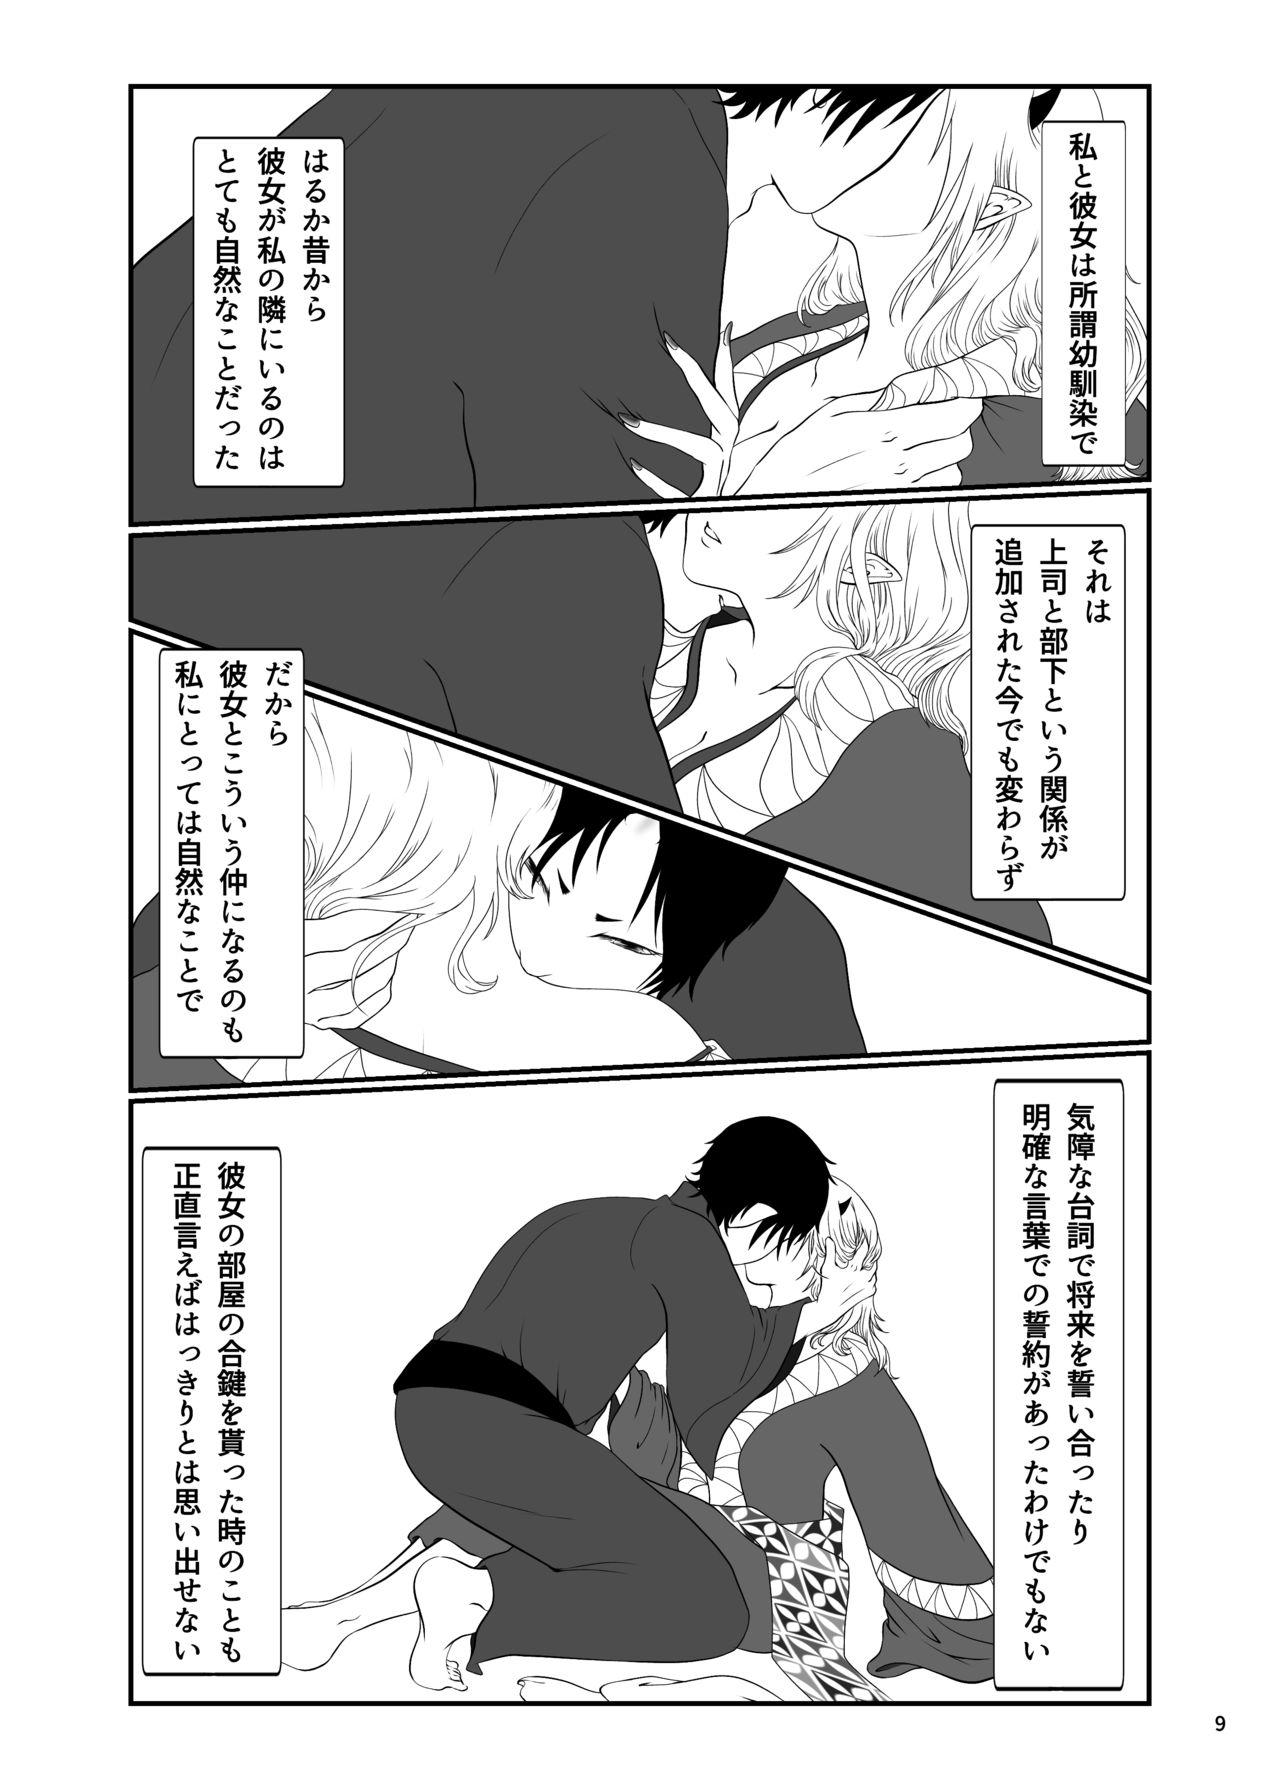 Tit Touni Anata no Mono - Hoozuki no reitetsu Gay Facial - Page 8